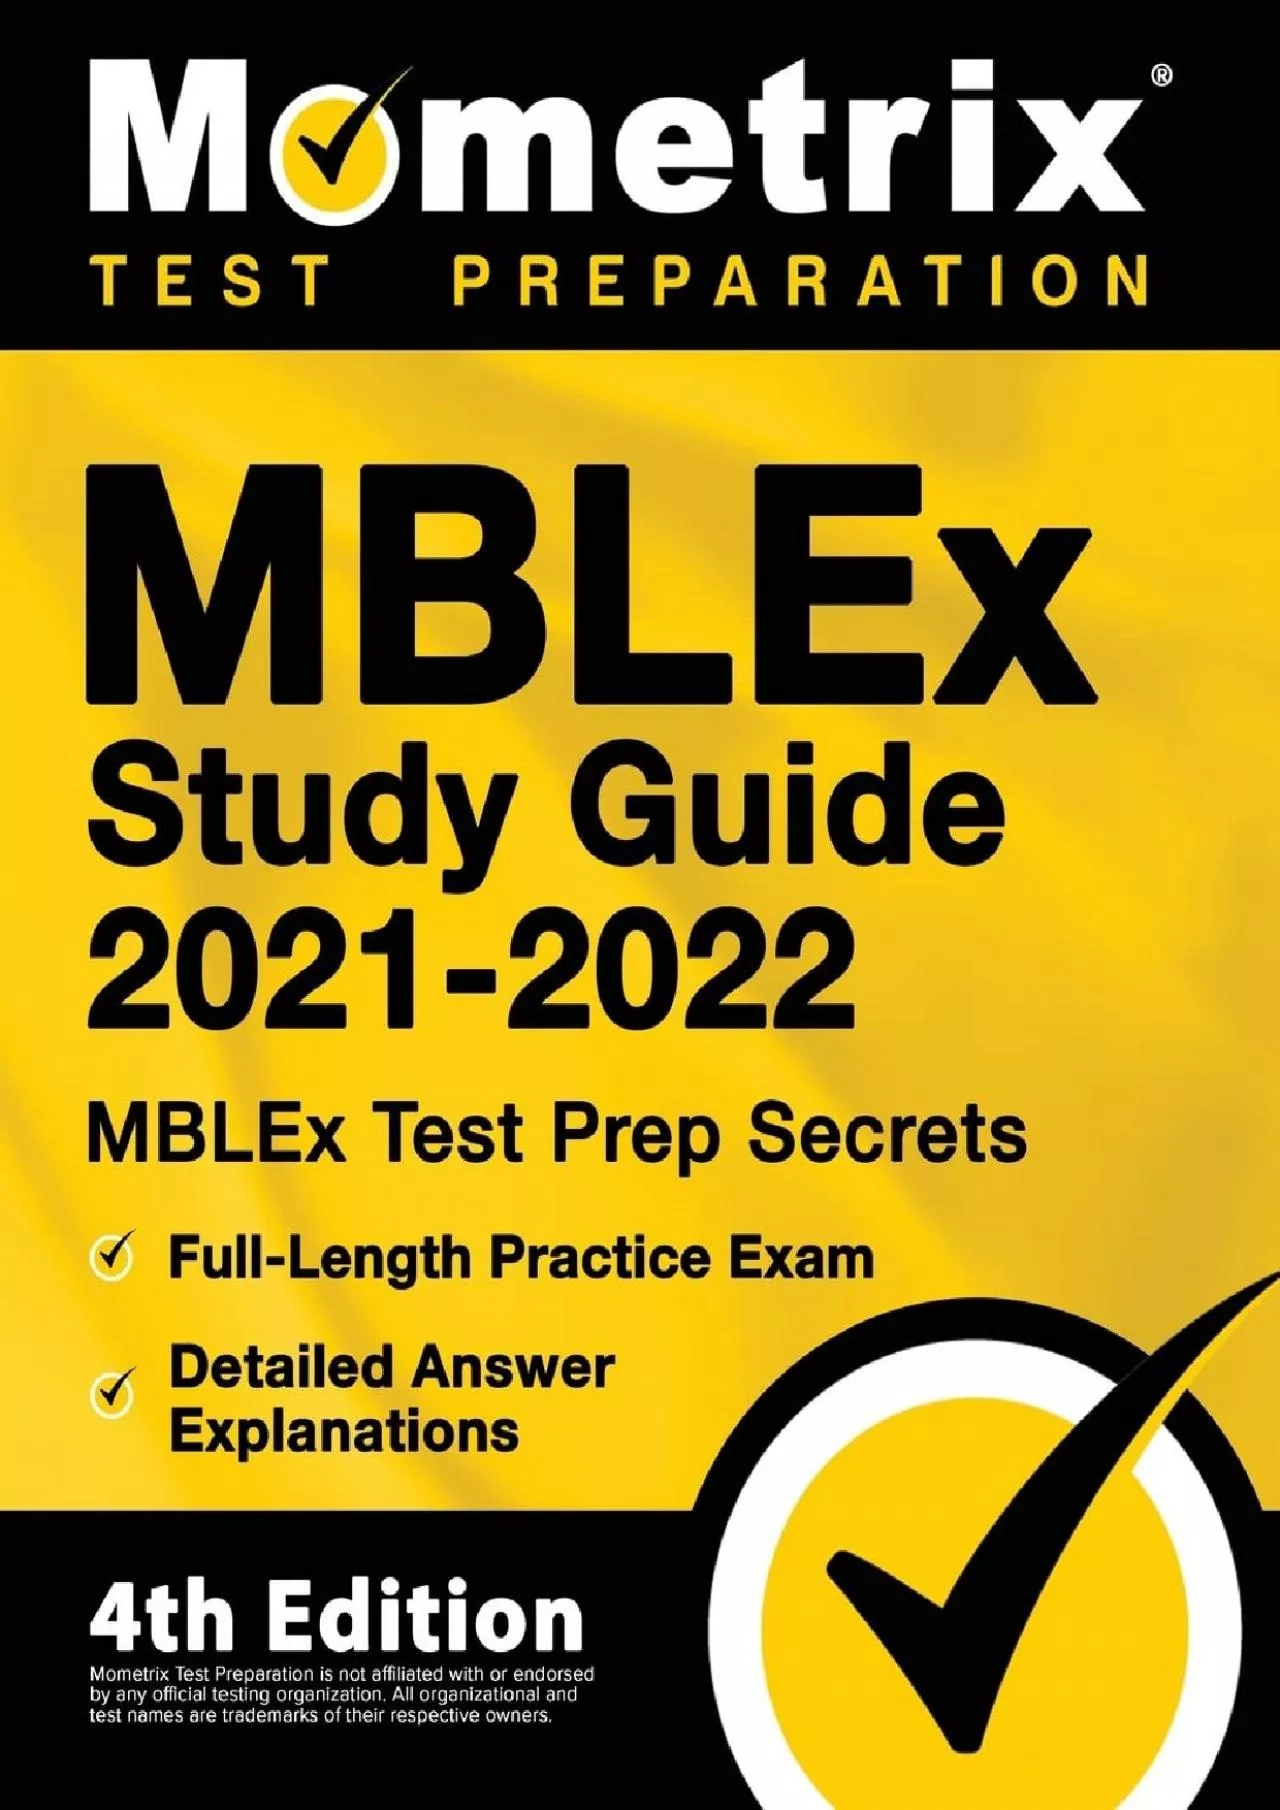 [DOWNLOAD] MBLEx Study Guide 2021-2022: MBLEx Test Prep Secrets, Full-Length Practice